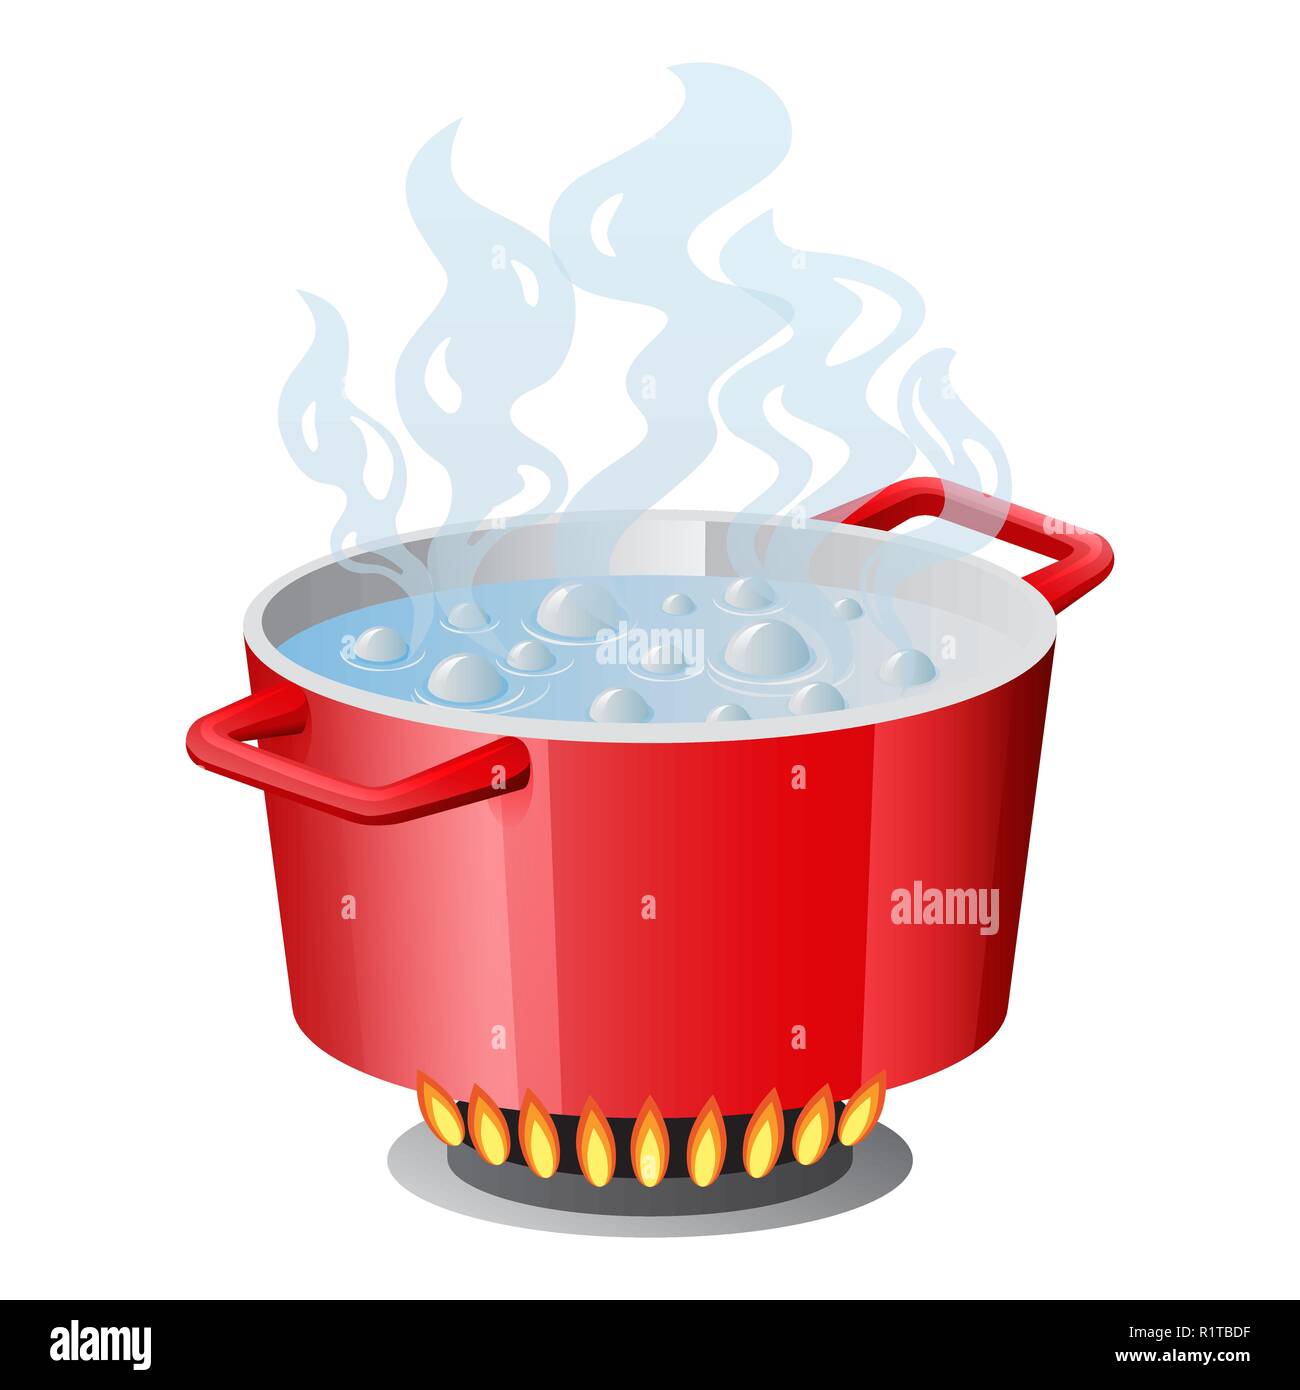 Rote Pfanne, Pfanne, Topf, Kasserolle, Kocher, stewpan mit kochendem Wasser und öffnete pan Deckel Vektor isoliert auf weißem Stock Vektor